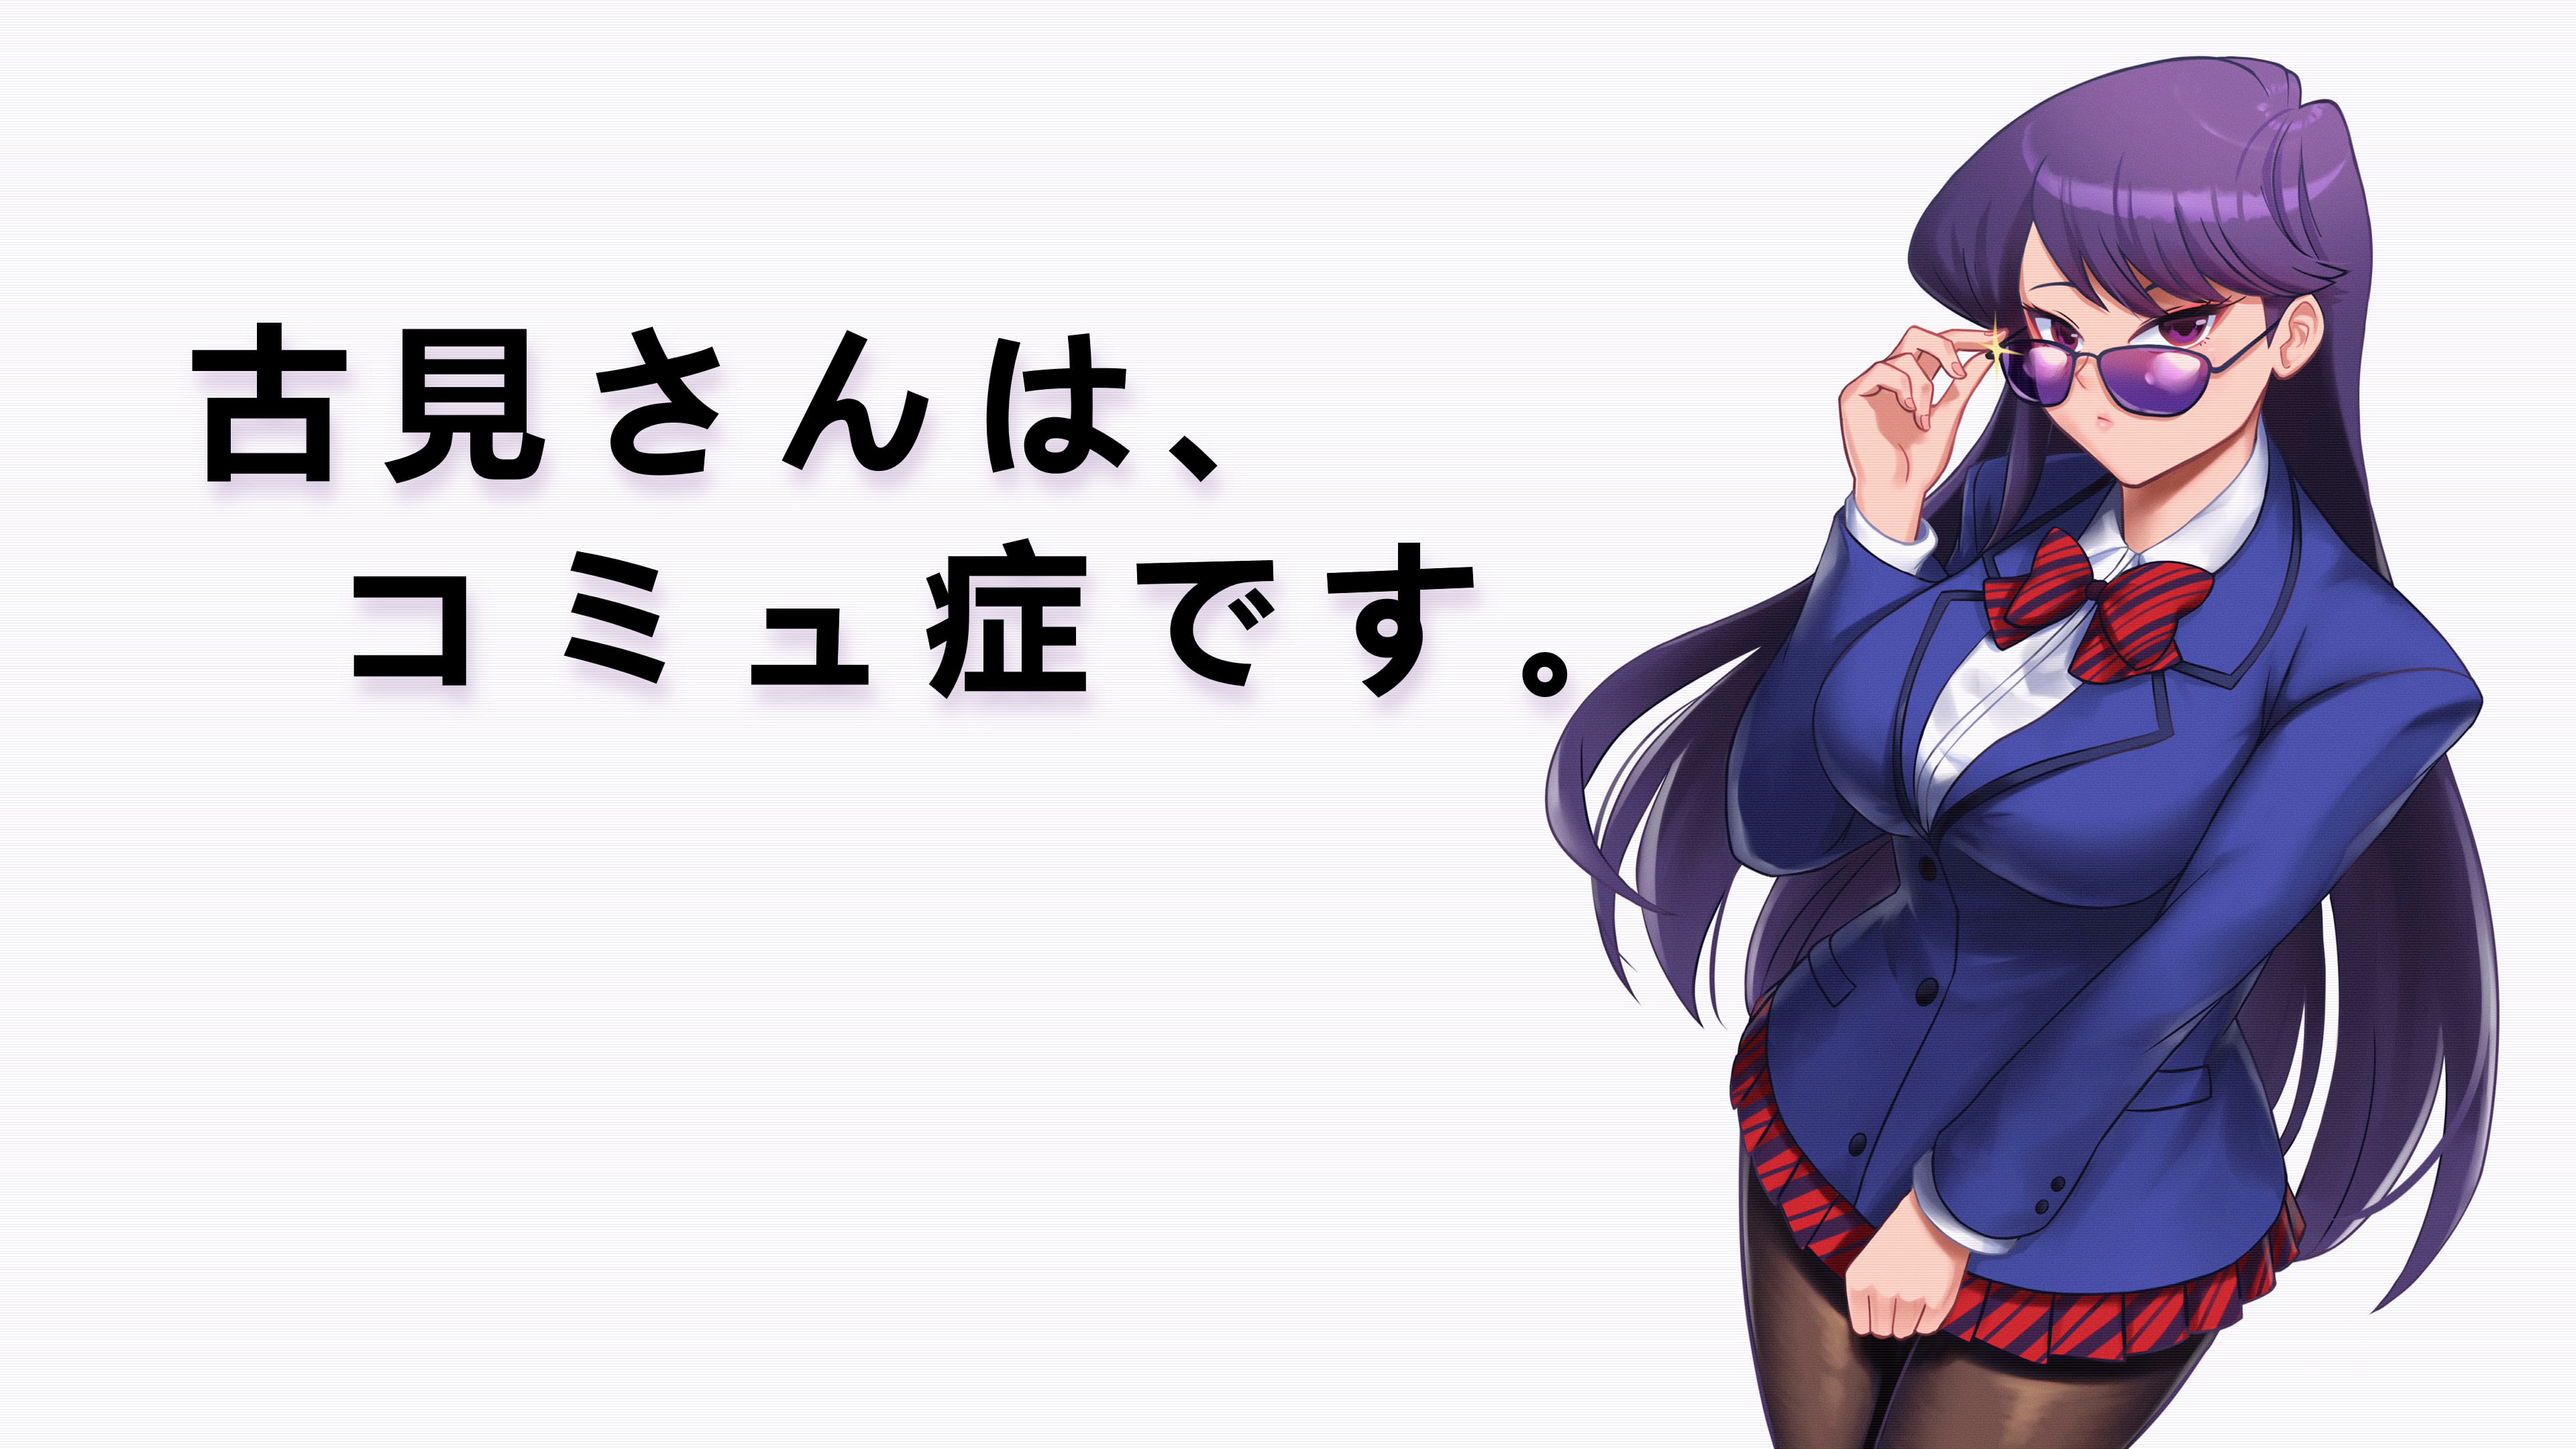 Komi-san wa, Comyushou desu., Komi Shouko, purple hair, long hair